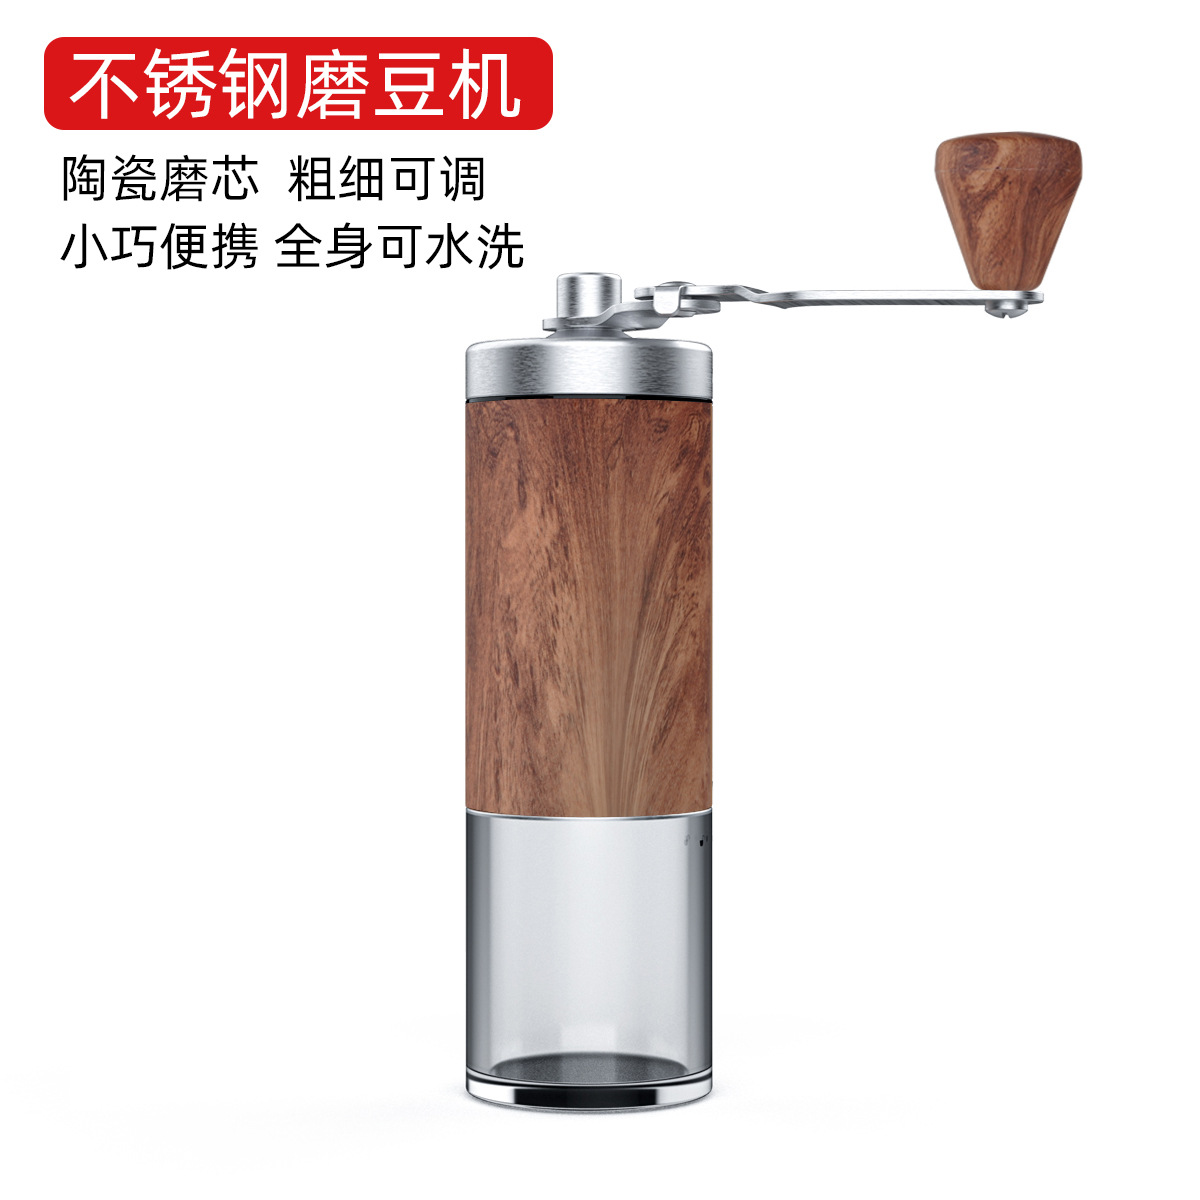 手摇磨豆机咖啡豆研磨机手动研磨器手磨咖啡机家用咖啡磨豆机陶芯|ms